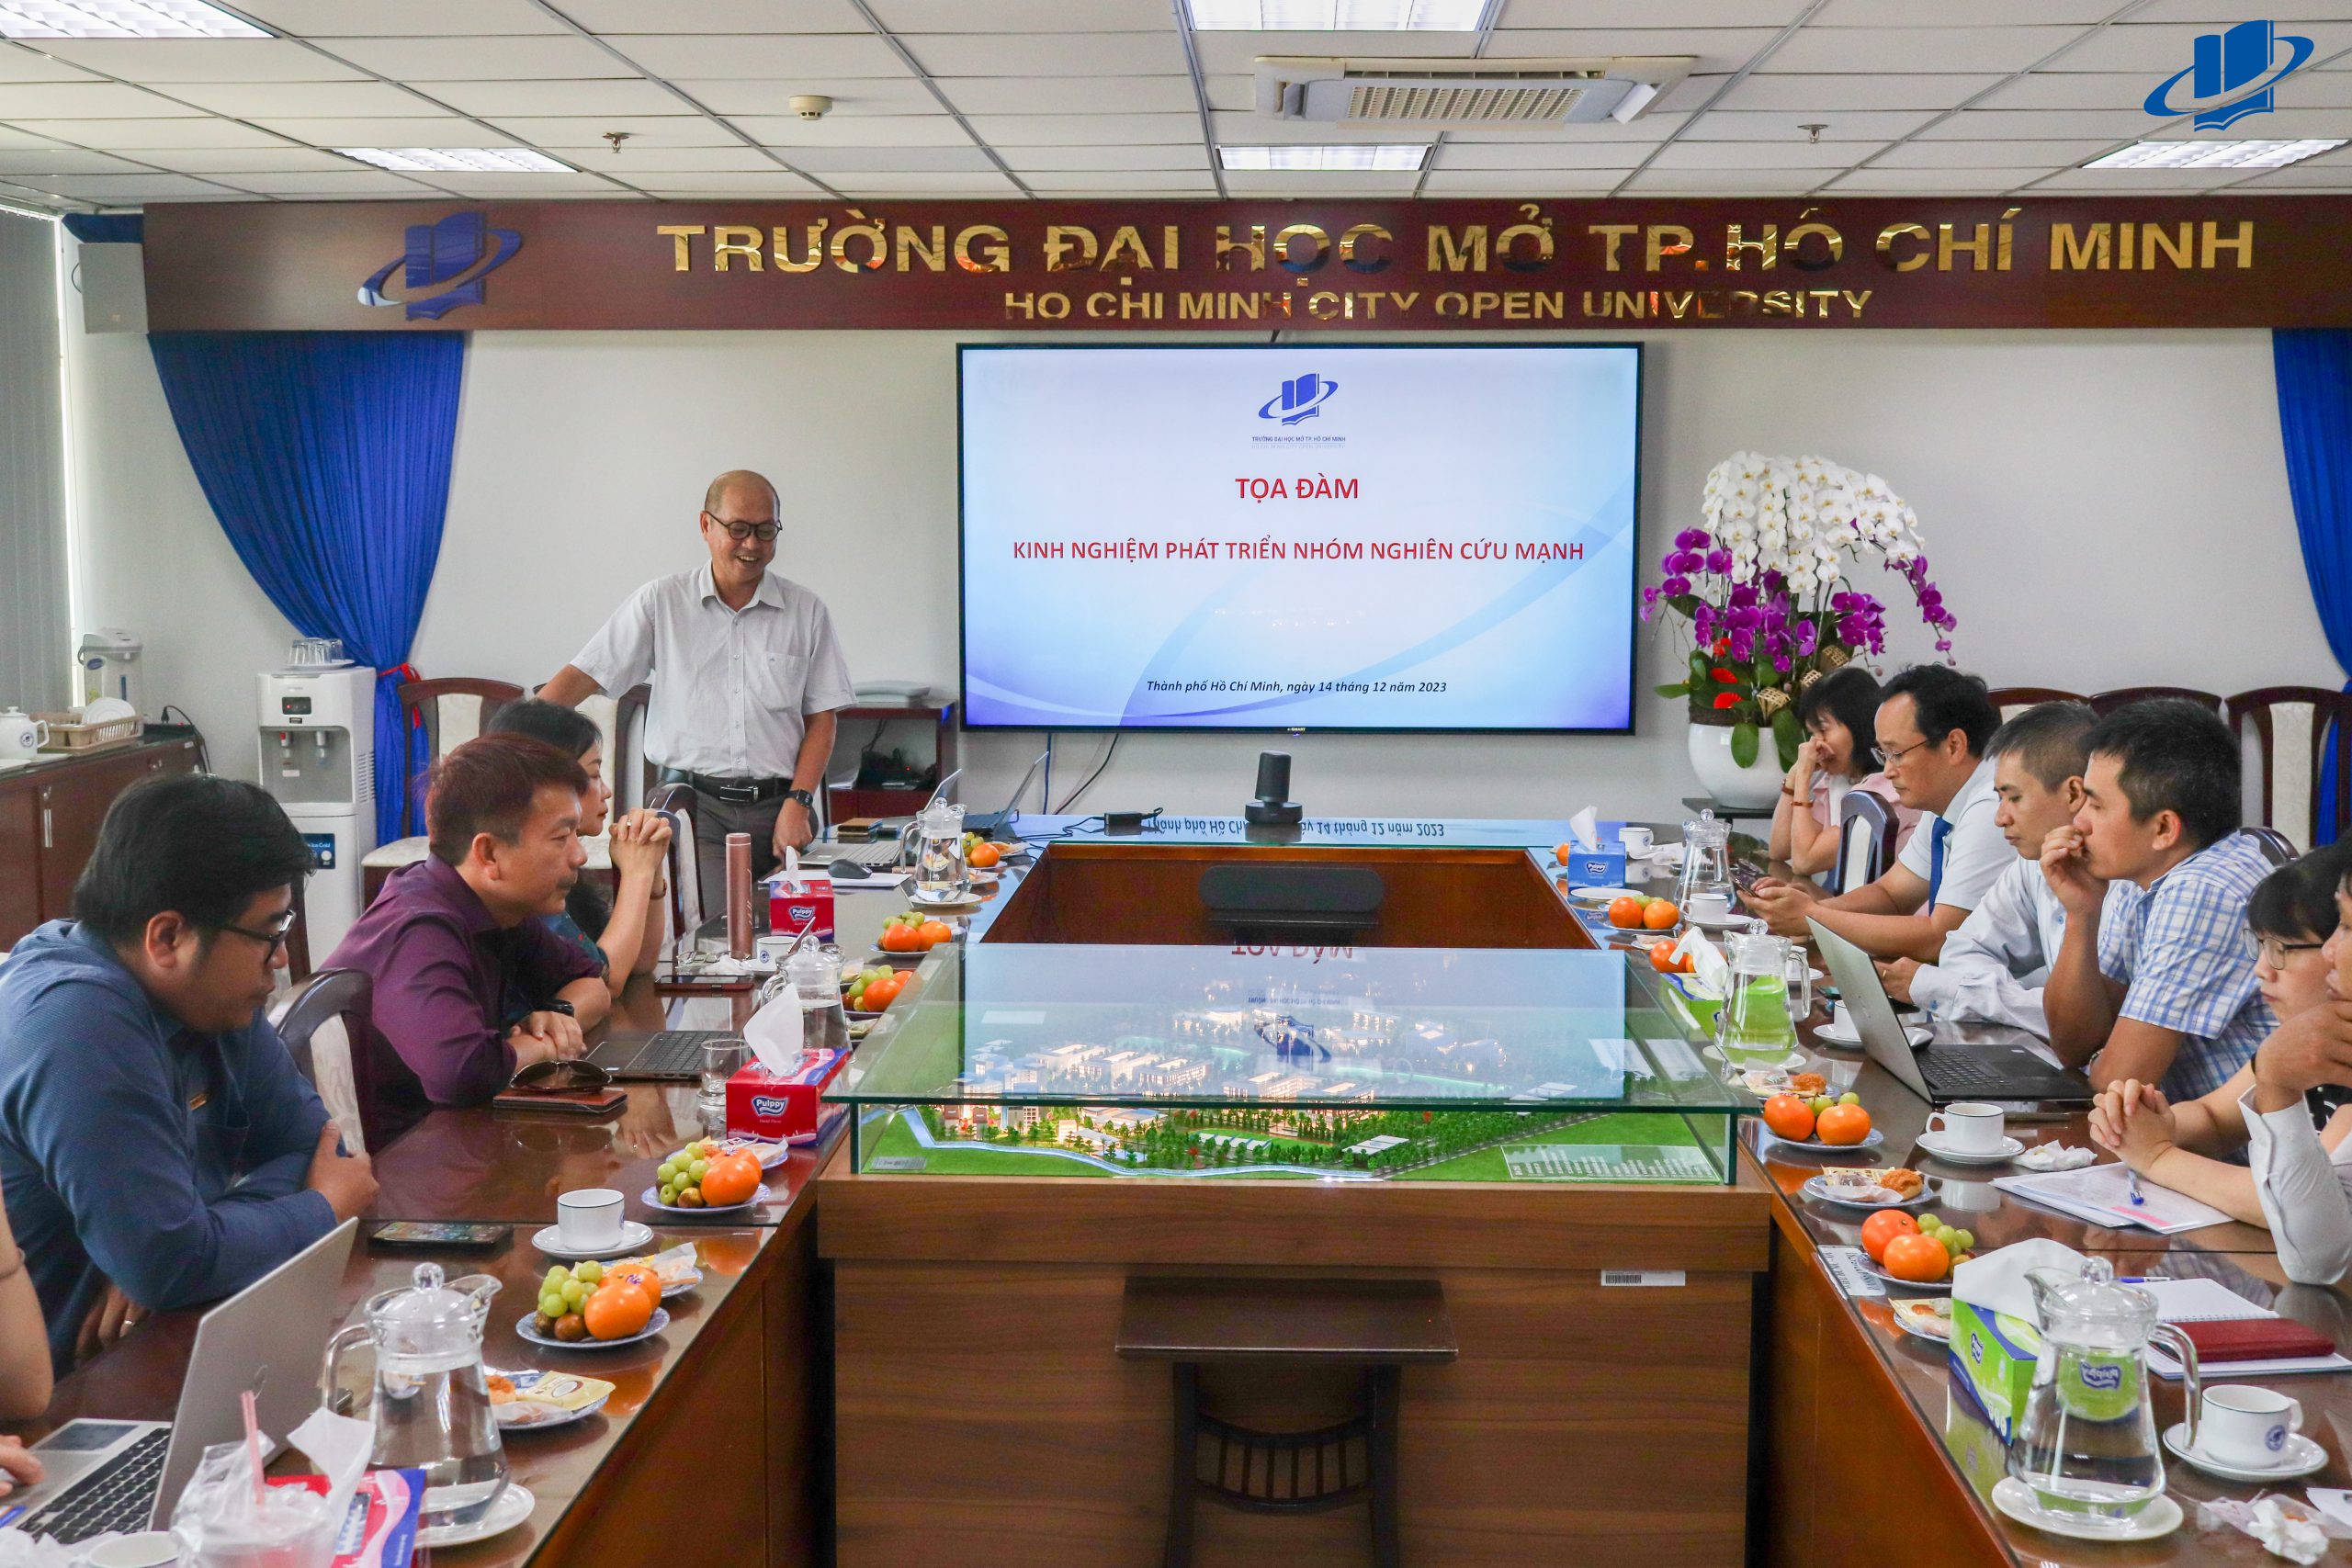 game bai doi thuong
 TP. Hồ Chí Minh tổ chức Tọa đàm Kinh nghiệm phát triển nhóm nghiên cứu mạnh